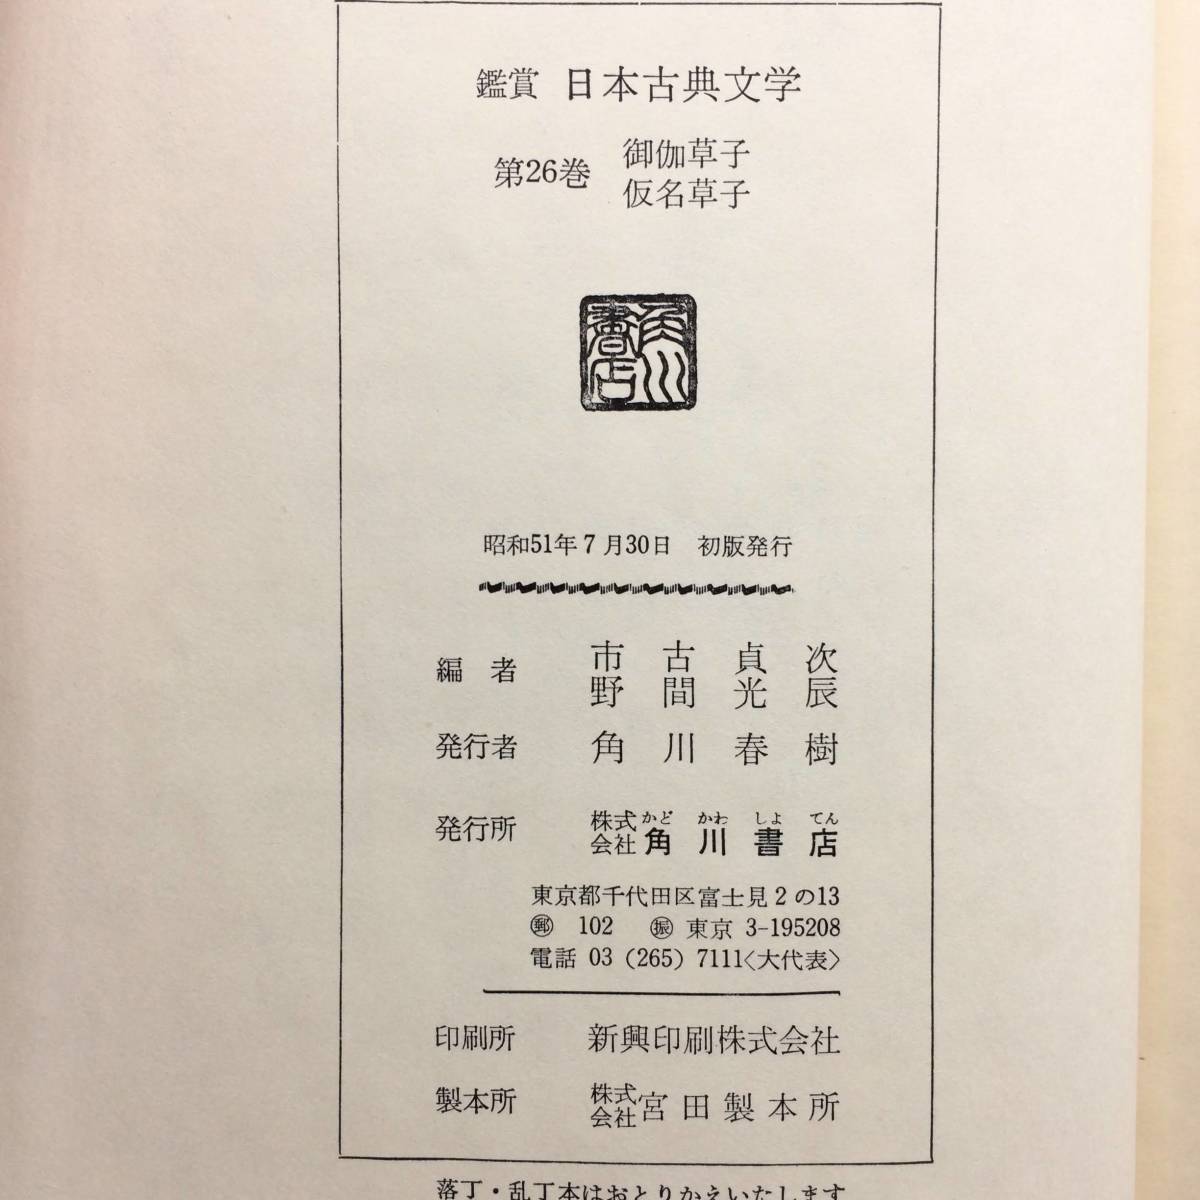  оценка Япония классическая литература no. 26 шт ....* временный название .. город старый . следующий *. промежуток свет . сборник Kadokawa Shoten 0601